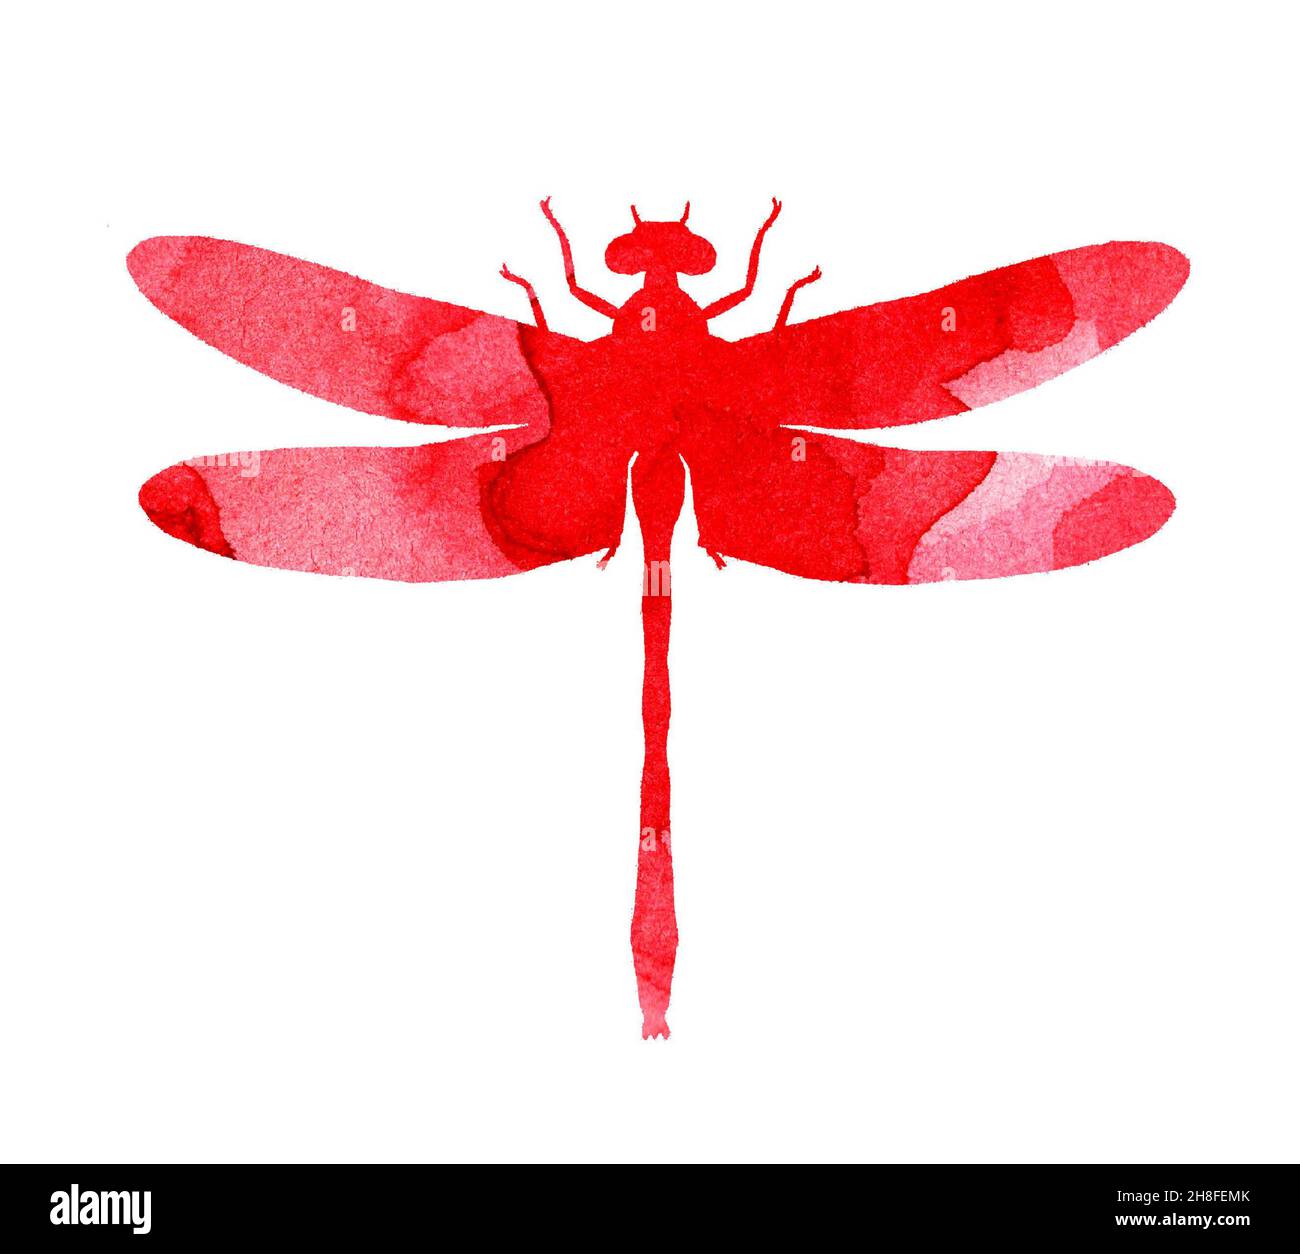 Illustration aquarelle d'une libellule rouge abstraite avec des rayures peintes.Joli imprimé insectes amusant.Un insecte ailé avec de grands yeux.Isolé sur blanc Banque D'Images